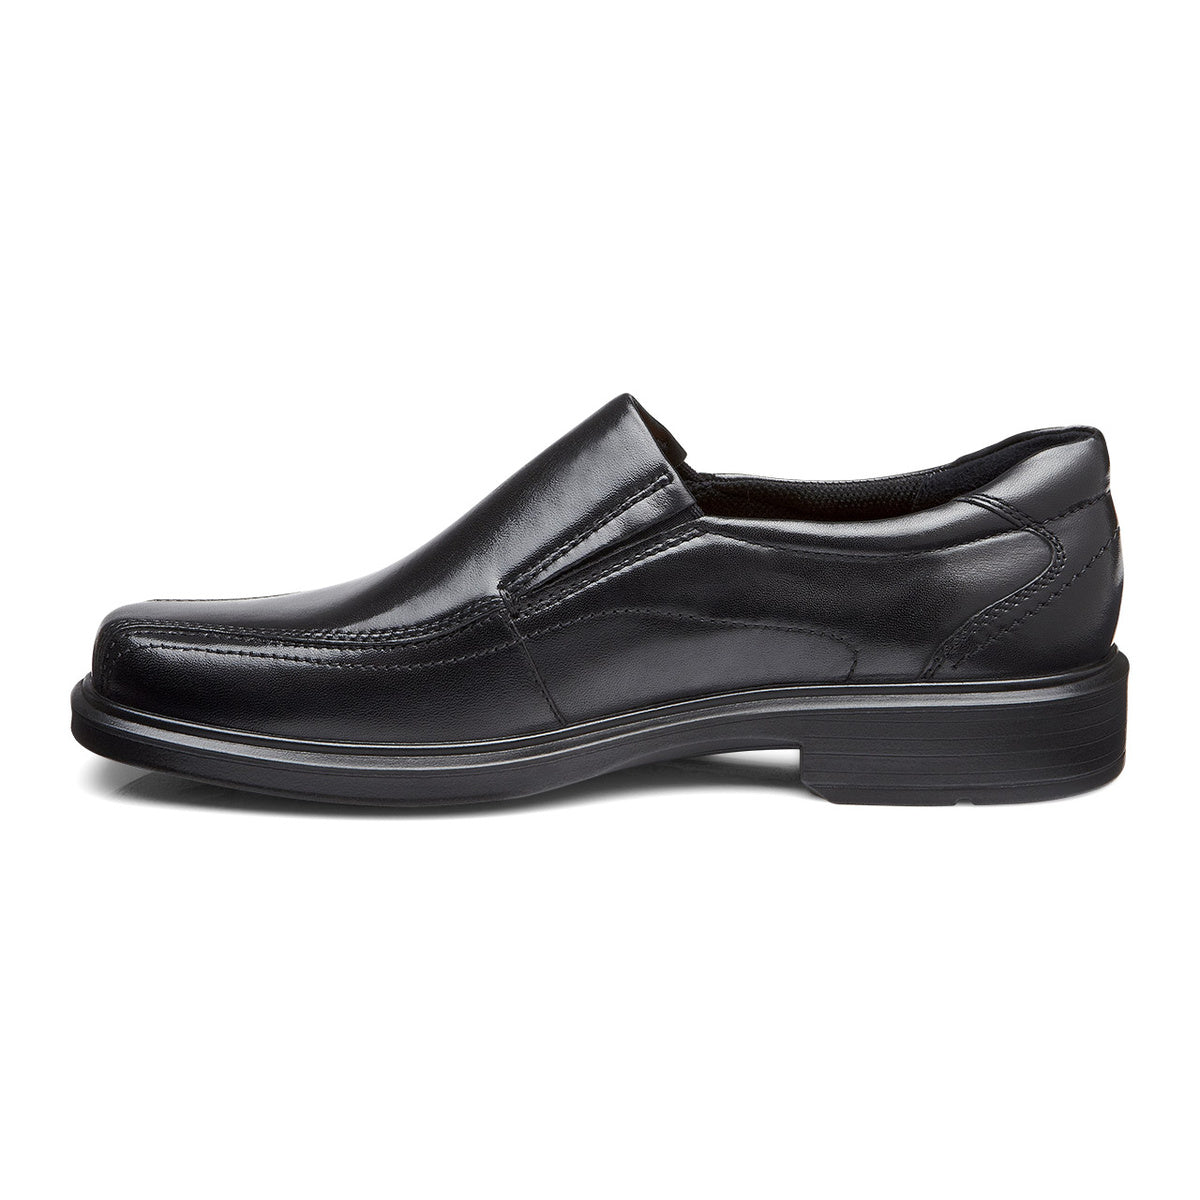 ECCO Helsinki Leather Slip On Dress Shoe - Black